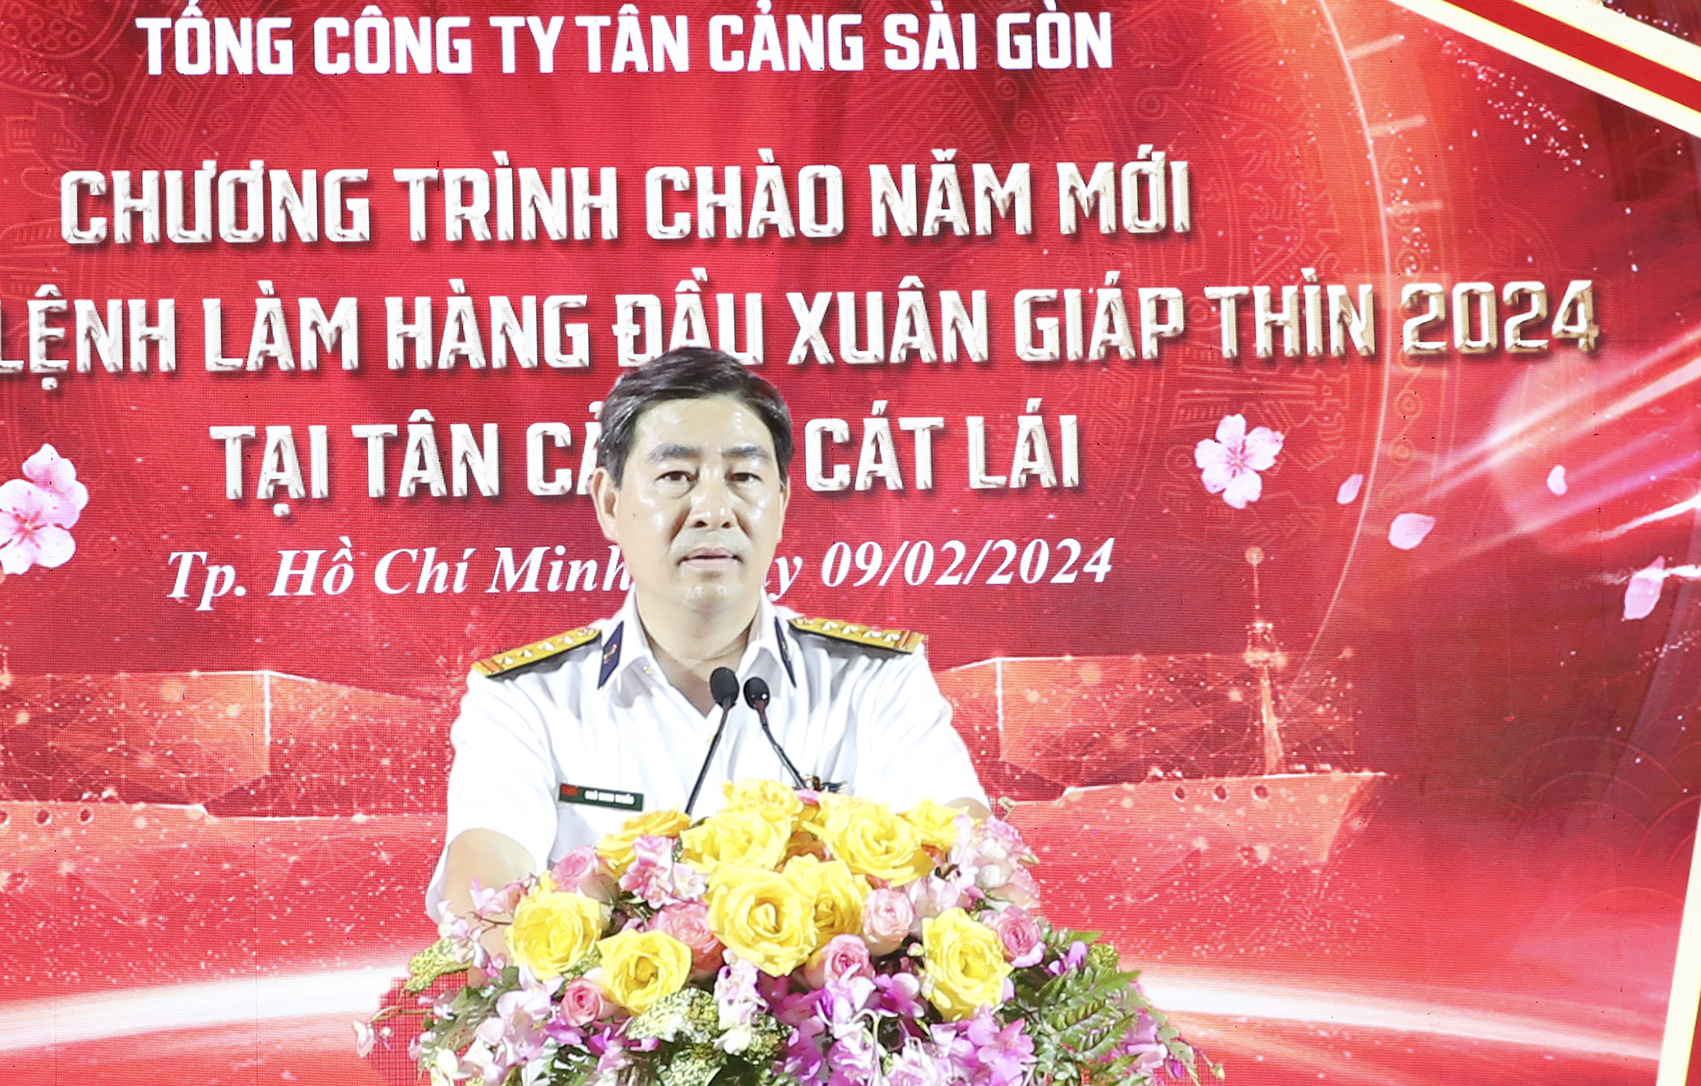 Tổng công ty Tân Cảng Sài Gòn phát lệnh làm hàng đầu xuân Giáp Thìn 2024- Ảnh 2.